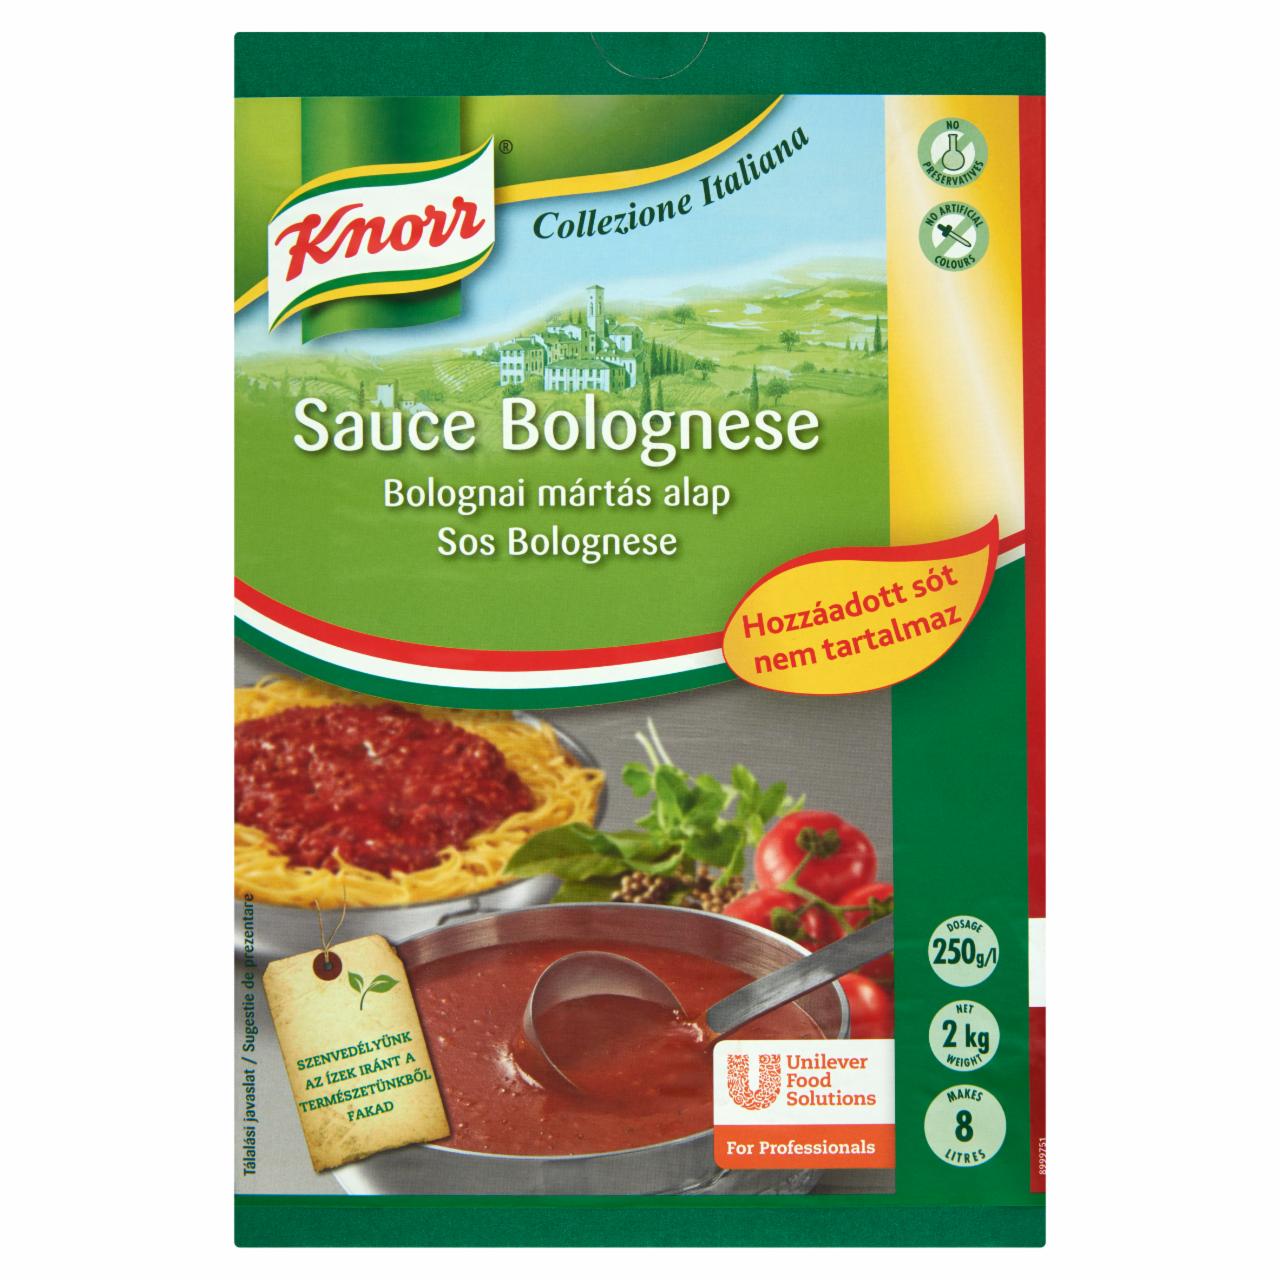 Képek - Knorr Bolognai mártás alap hozzáadott só nélkül 2 kg